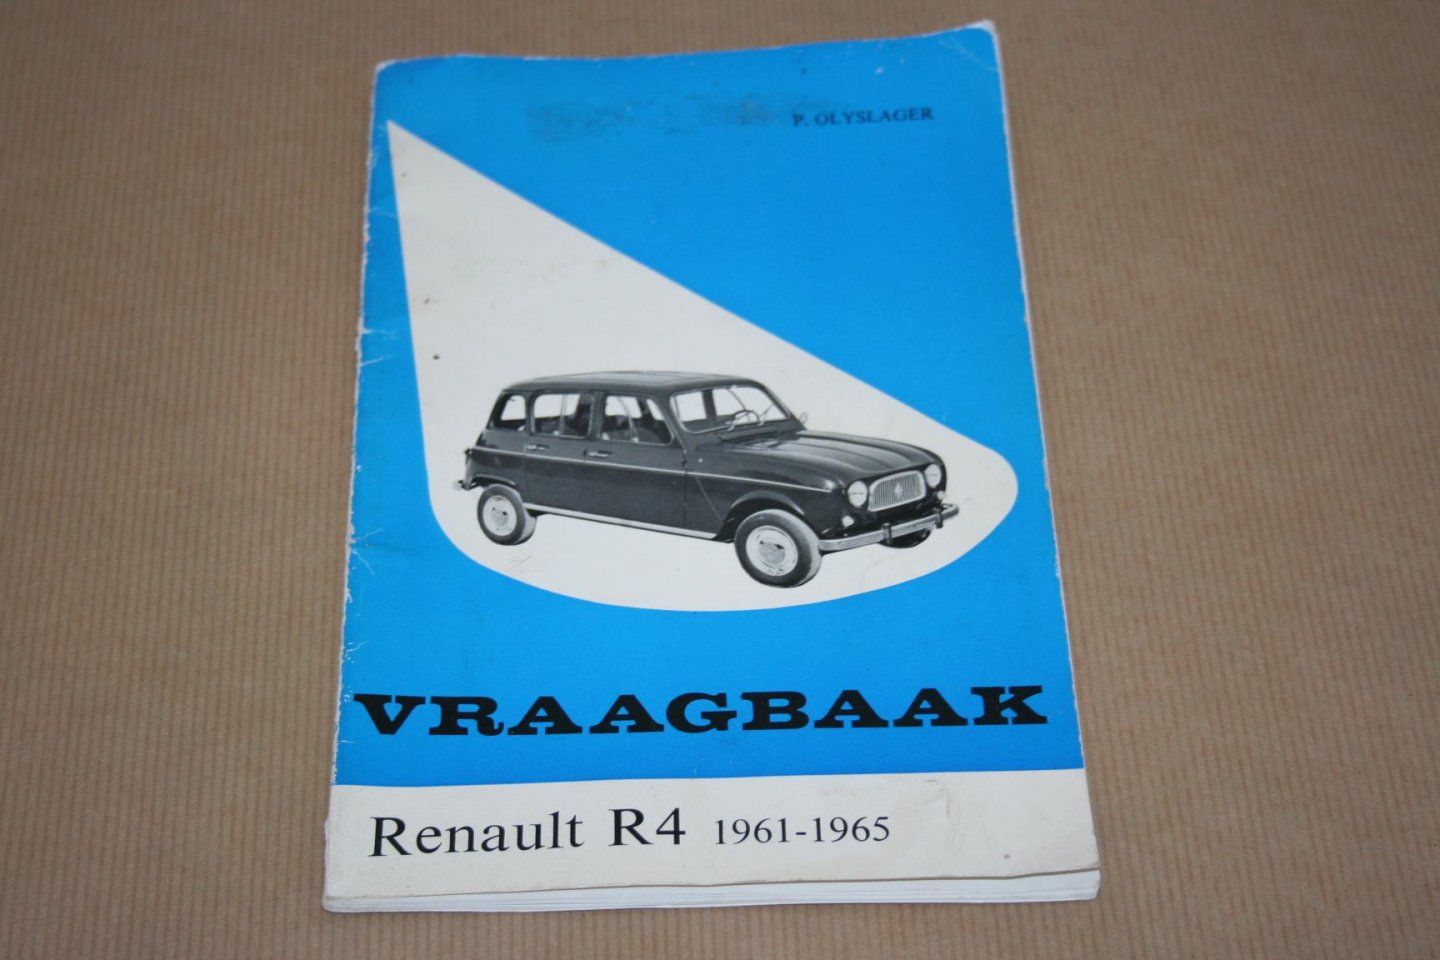 P. Olyslager - Vraagbaak Renault R4 1961-1965